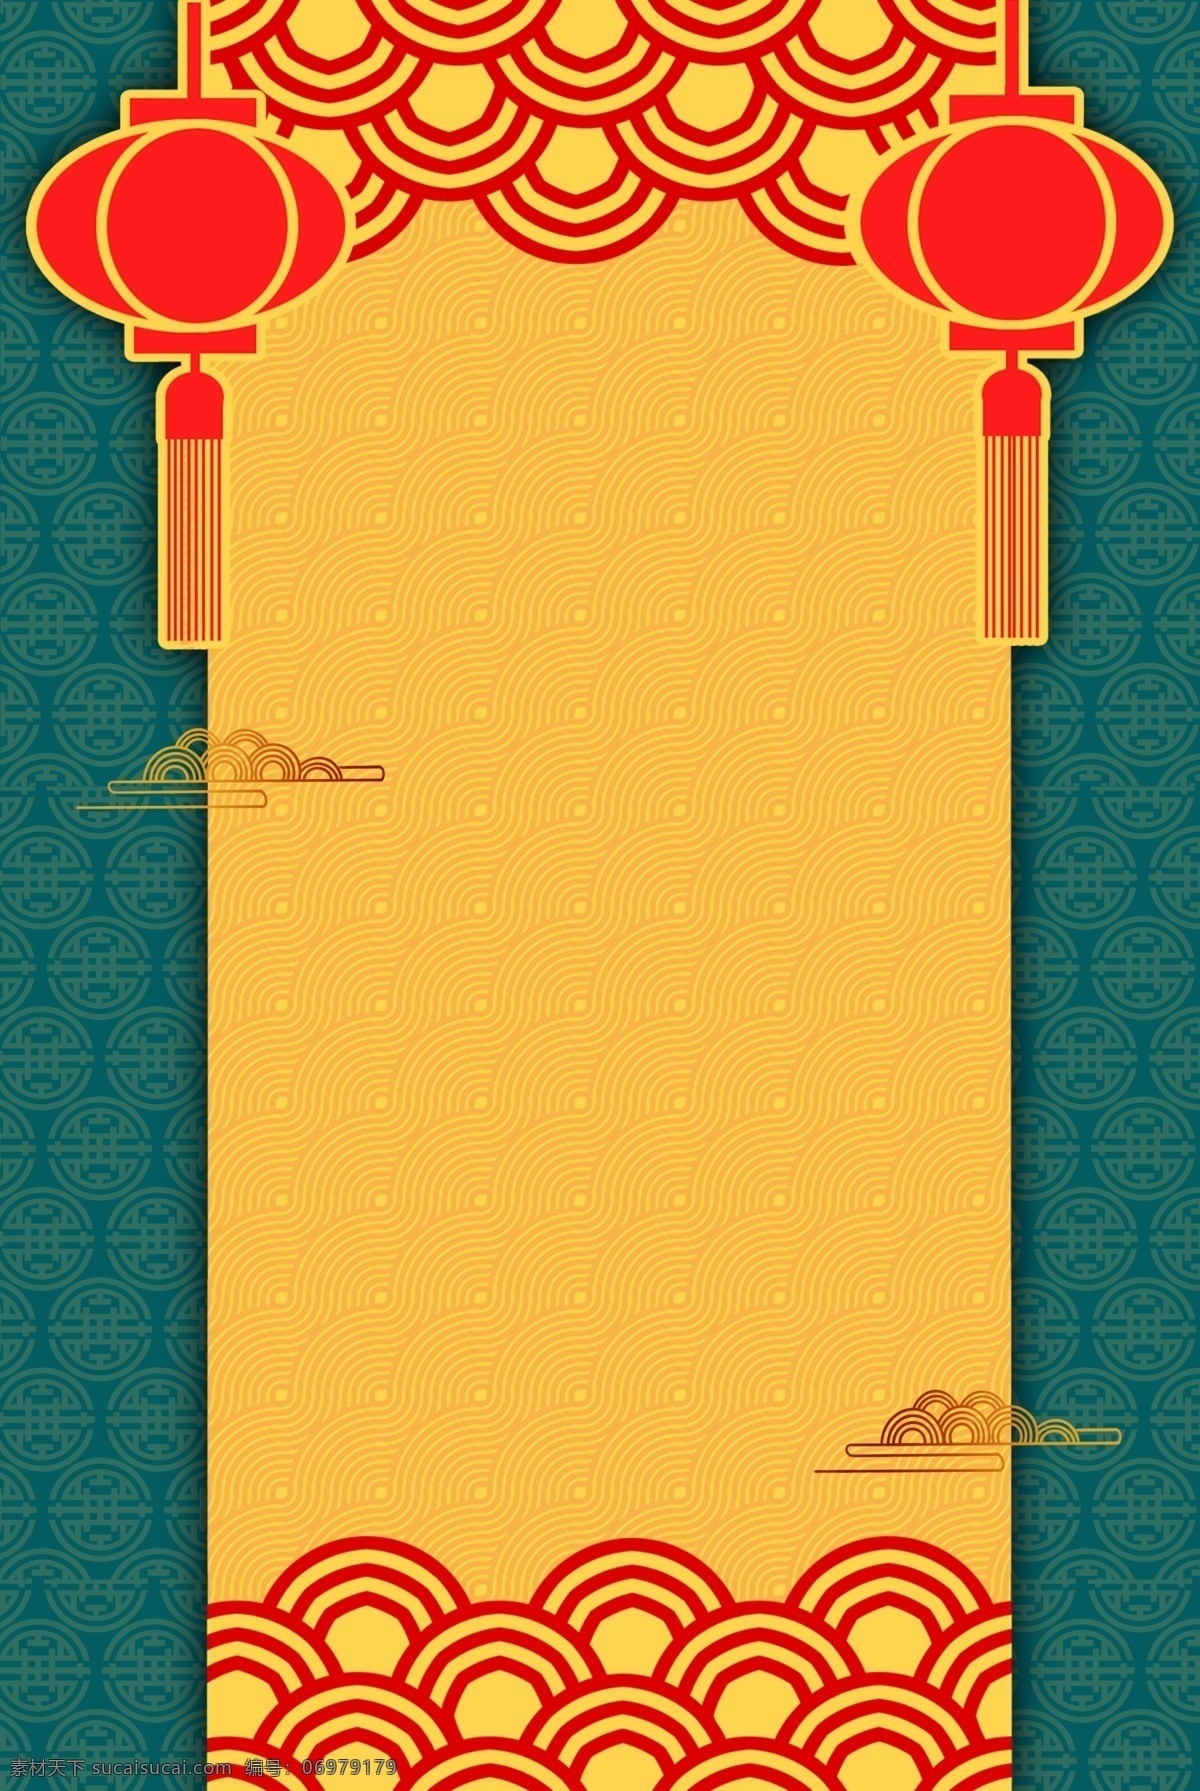 复古 中国 风 底纹 边框 背景 海报 喜庆 祥云 灯笼 中国风 中式 简约